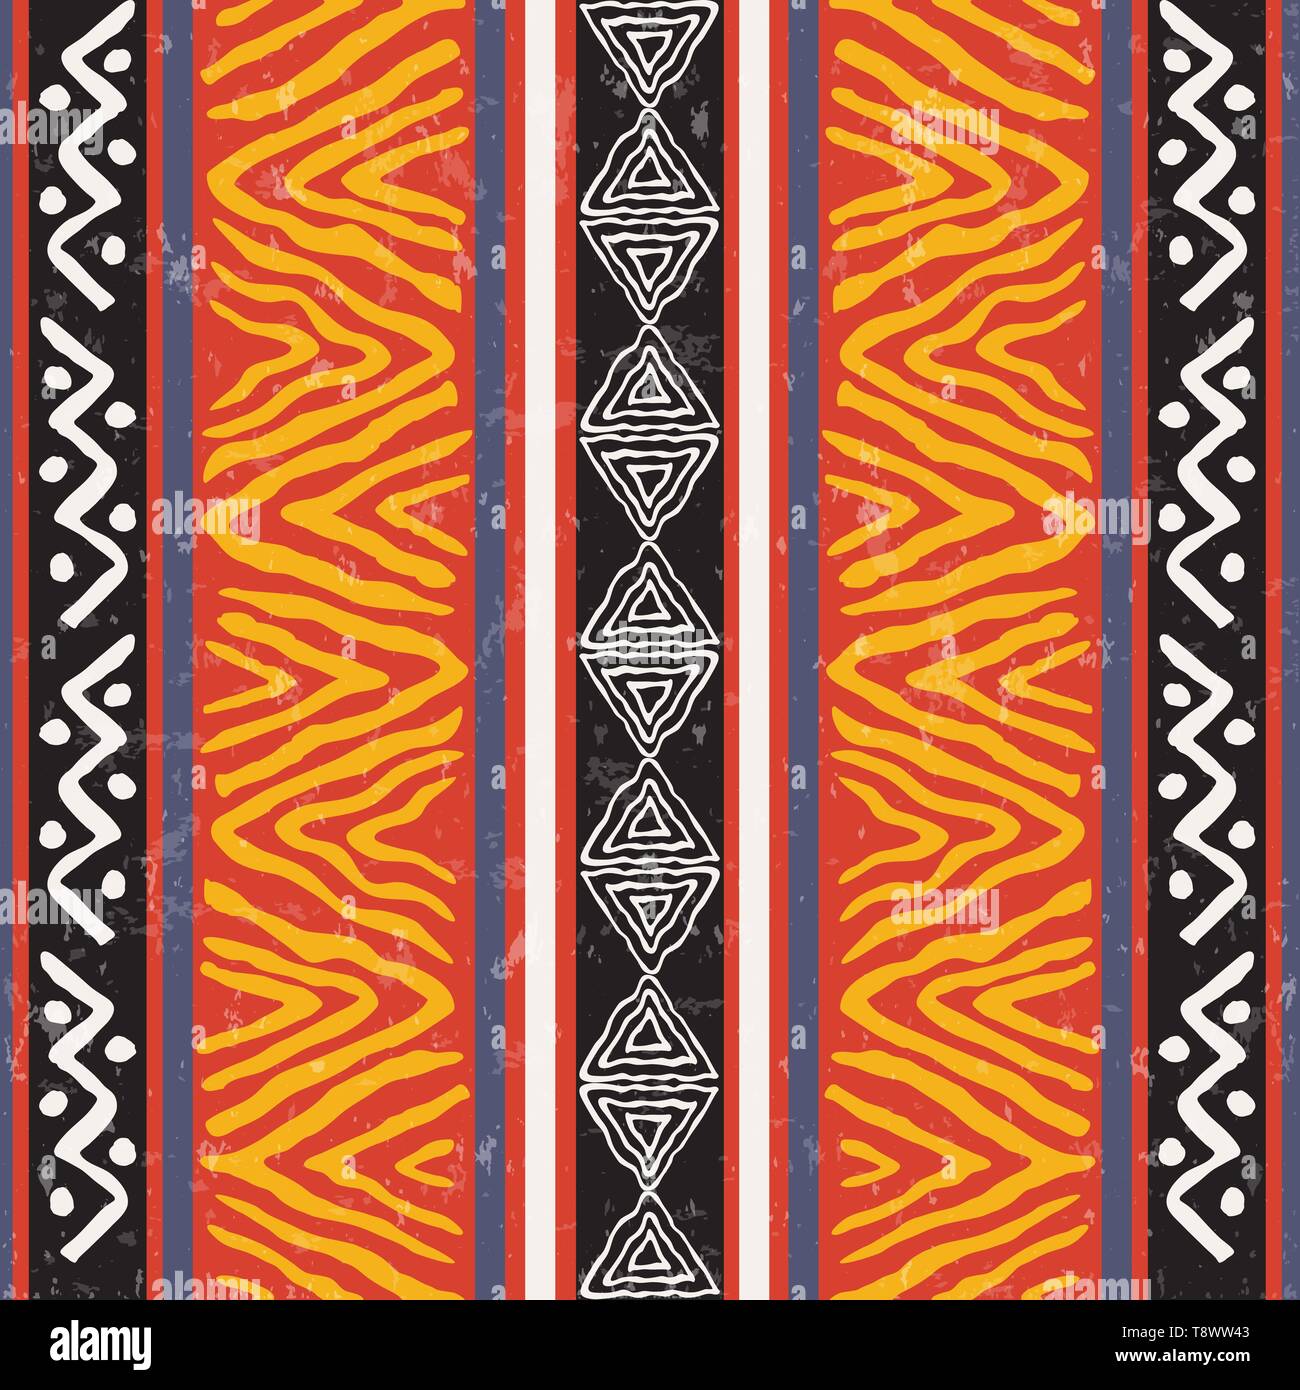 Afrikanische Kunst nahtlose Muster Abbildung mit bunten tribal Dekoration. Wild boho Hintergrund Design. Stock Vektor